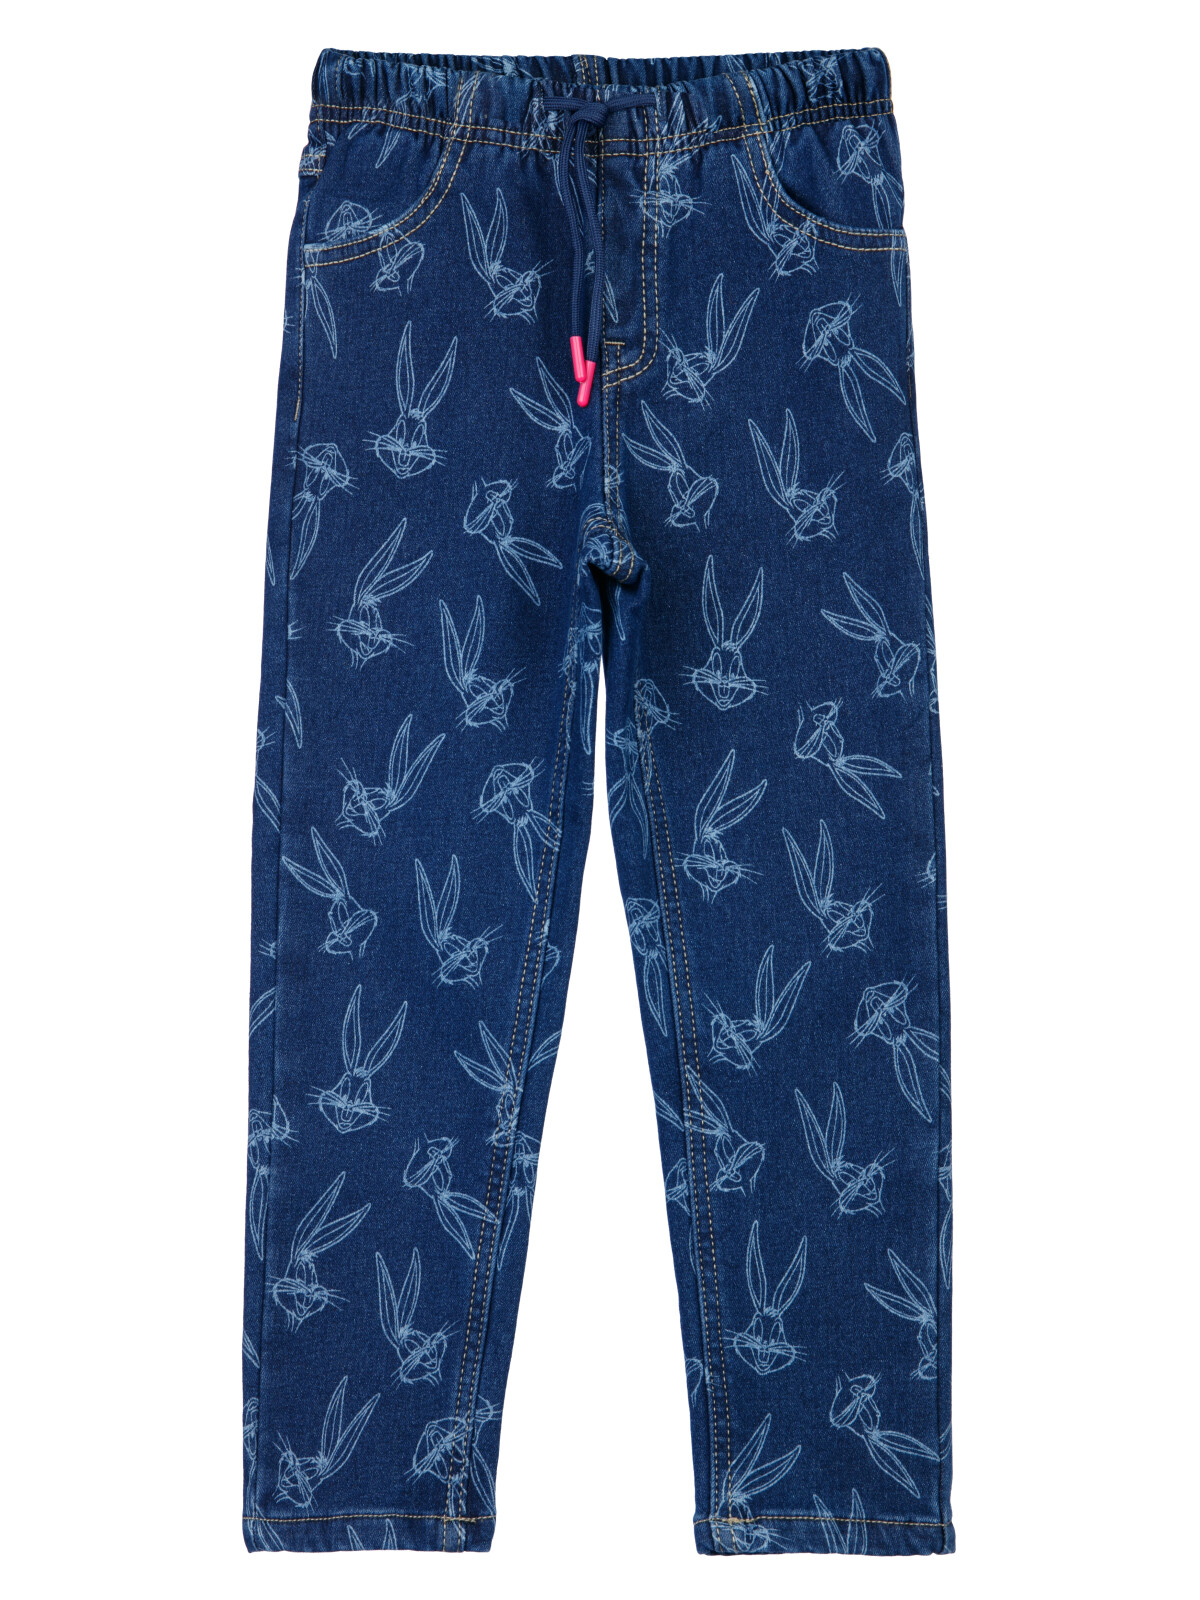 Брюки текстильные джинсовые утепленные флисом для девочек PlayToday, тёмно-синий, 98